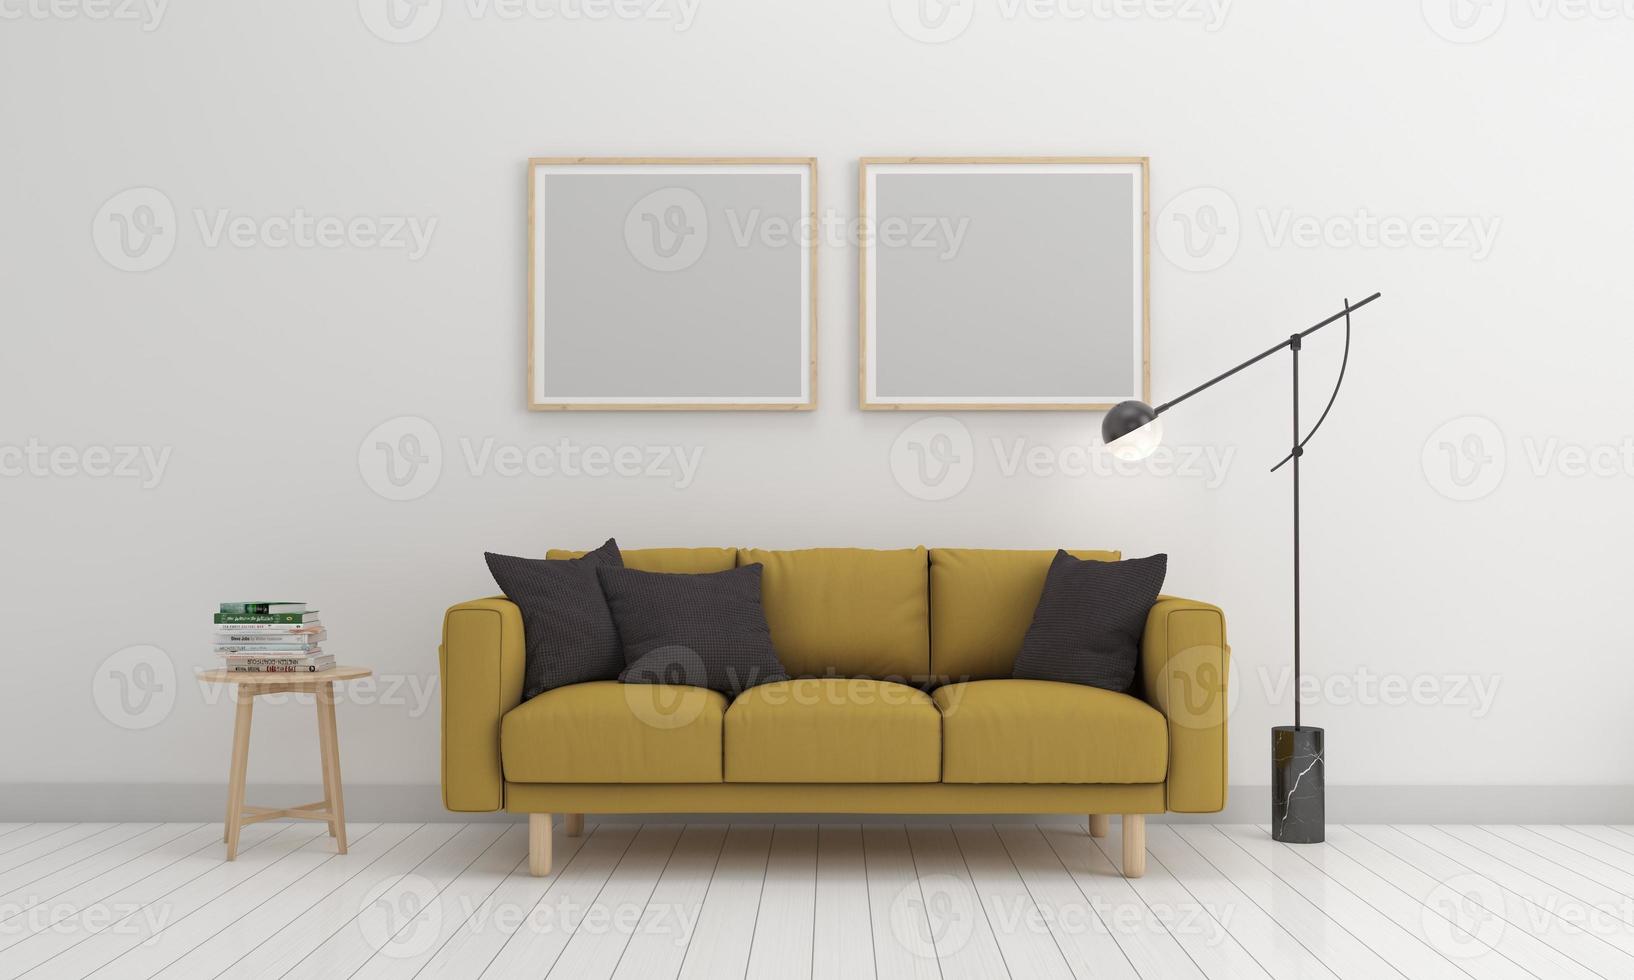 3D gjorda interiör modernt vardagsrum ram med soffa - soffa och bord foto